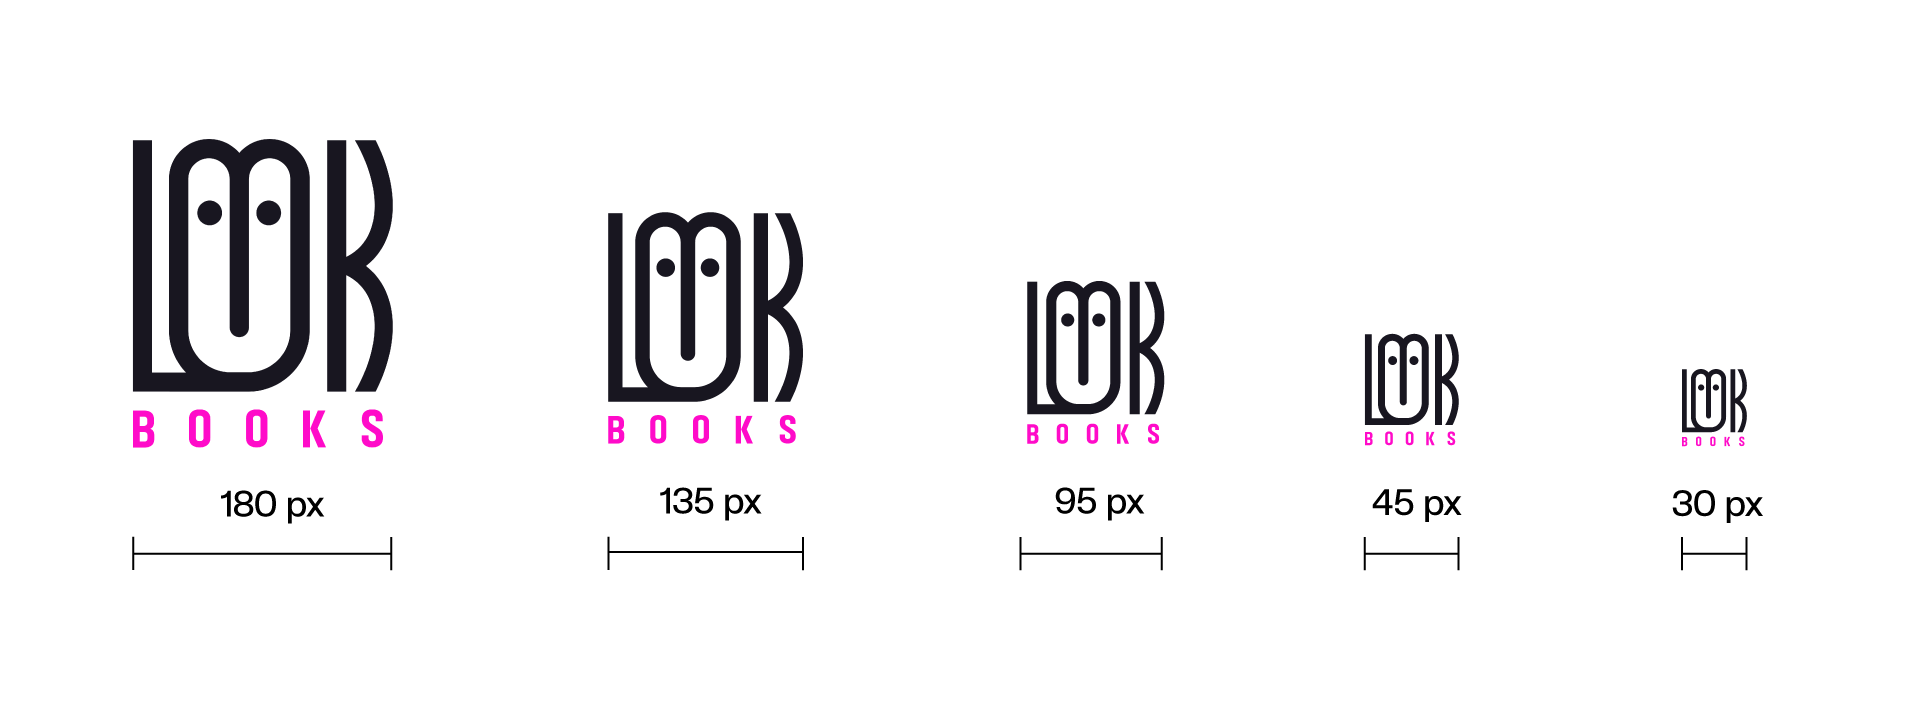 Logo Look Books in verschiedenen Größen von 180 px bis 30 px